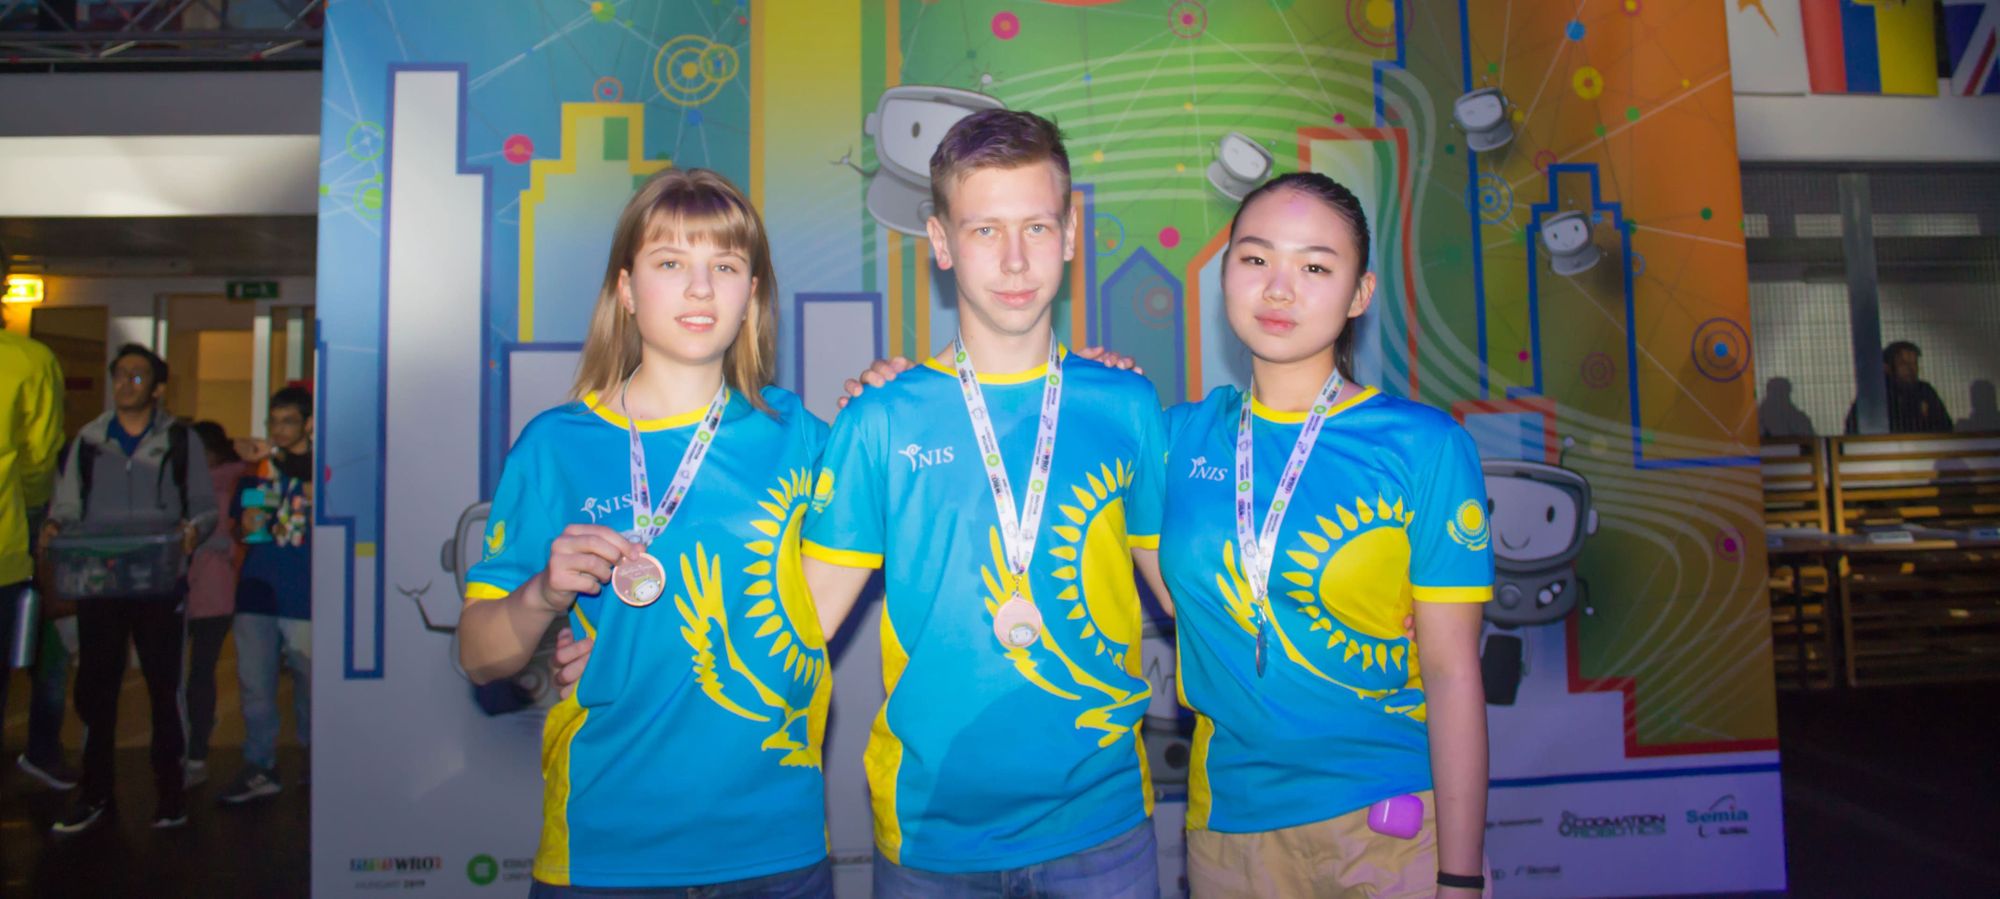 В робототехнике нет определенной инструкции как все делать - команда Казахстана на WRO 2019